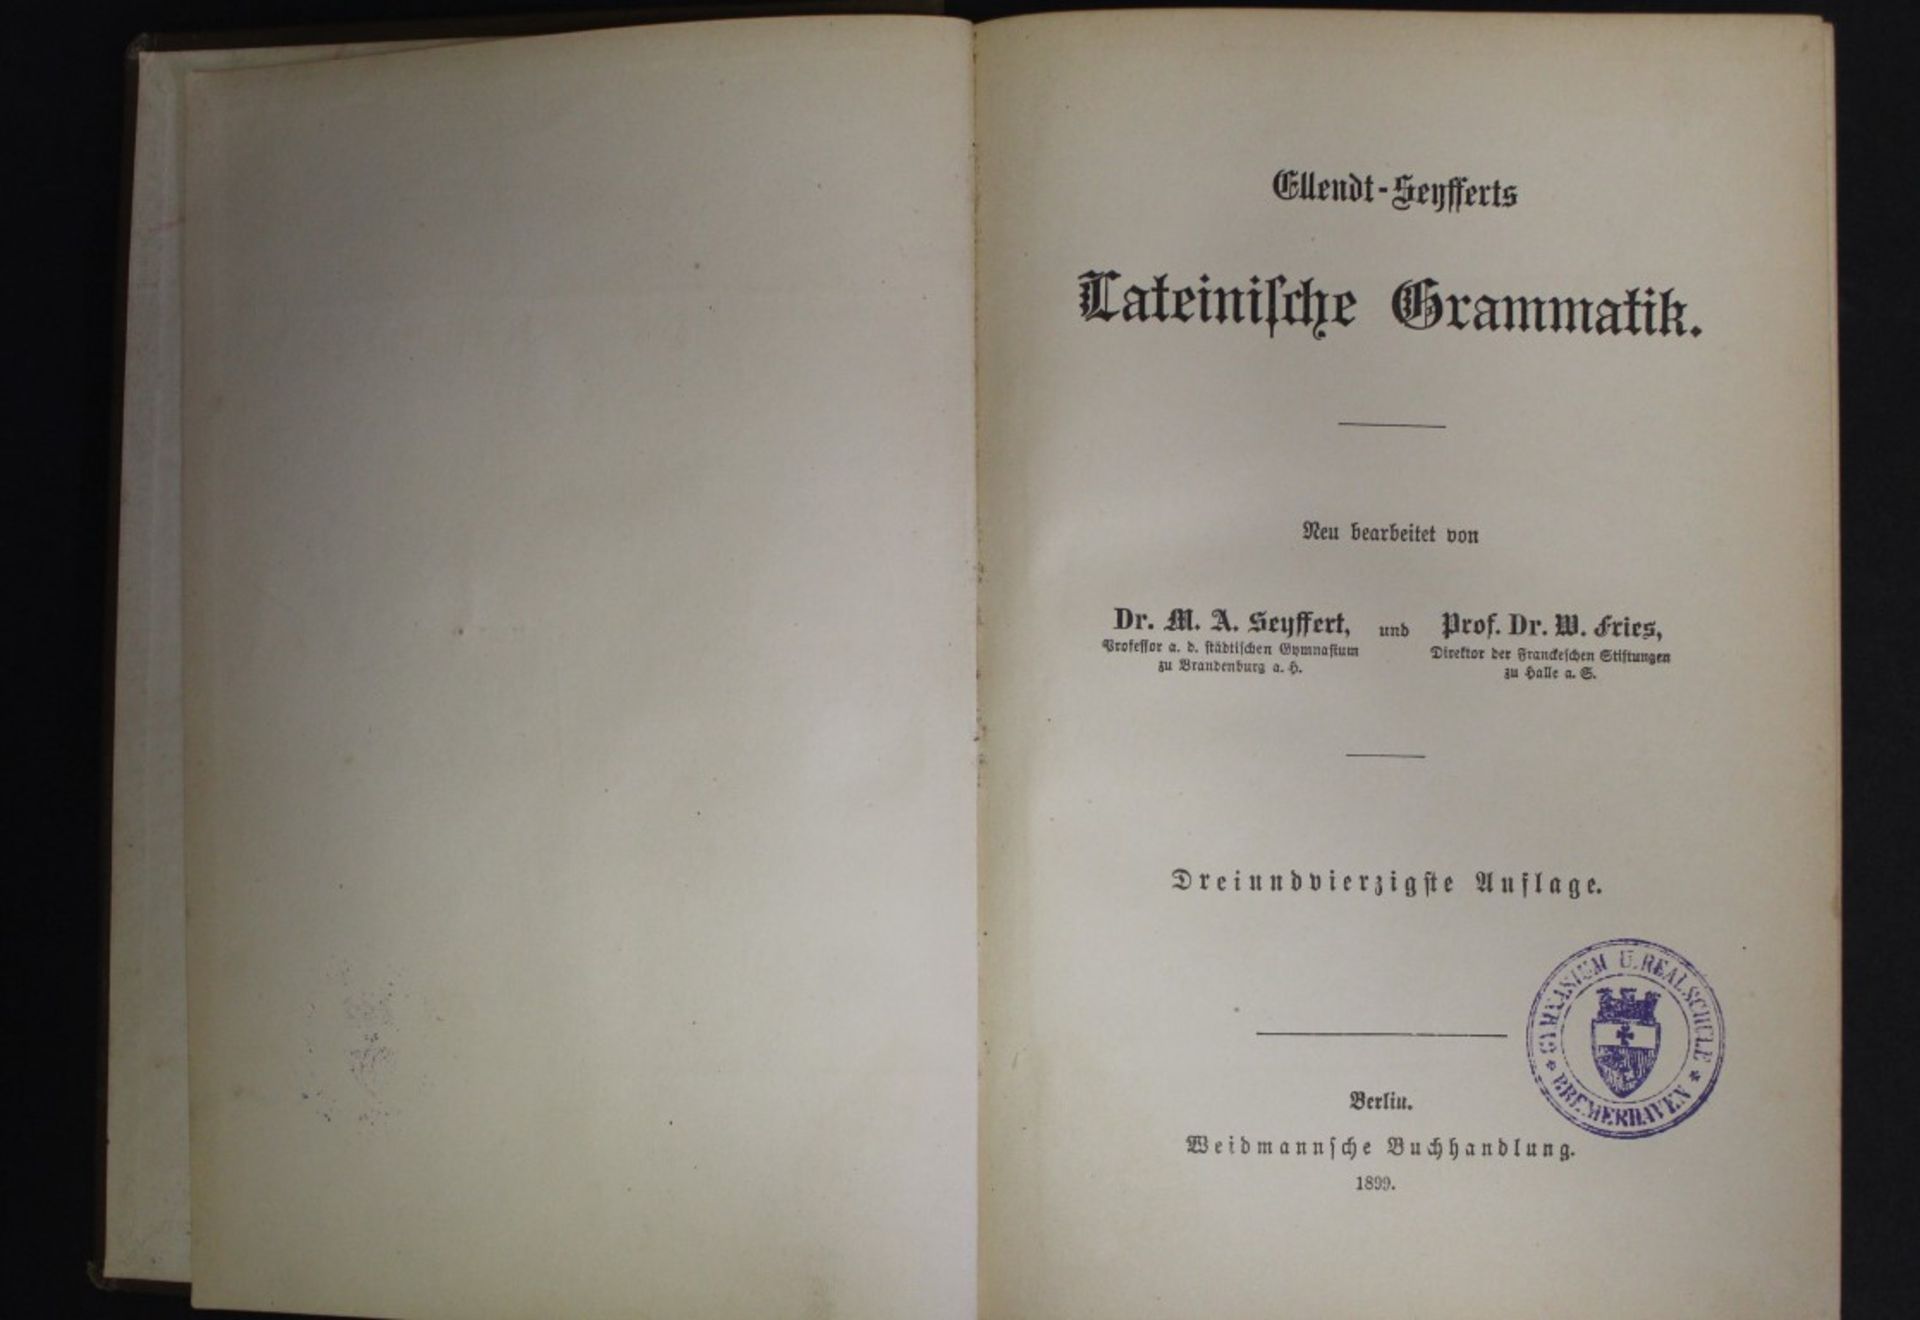 Lateinische Grammatik, Ellendt-Seyfferts,Berlin 1899, 43. Auflage,Alters-u. Gebrauchsspuren - Bild 2 aus 4